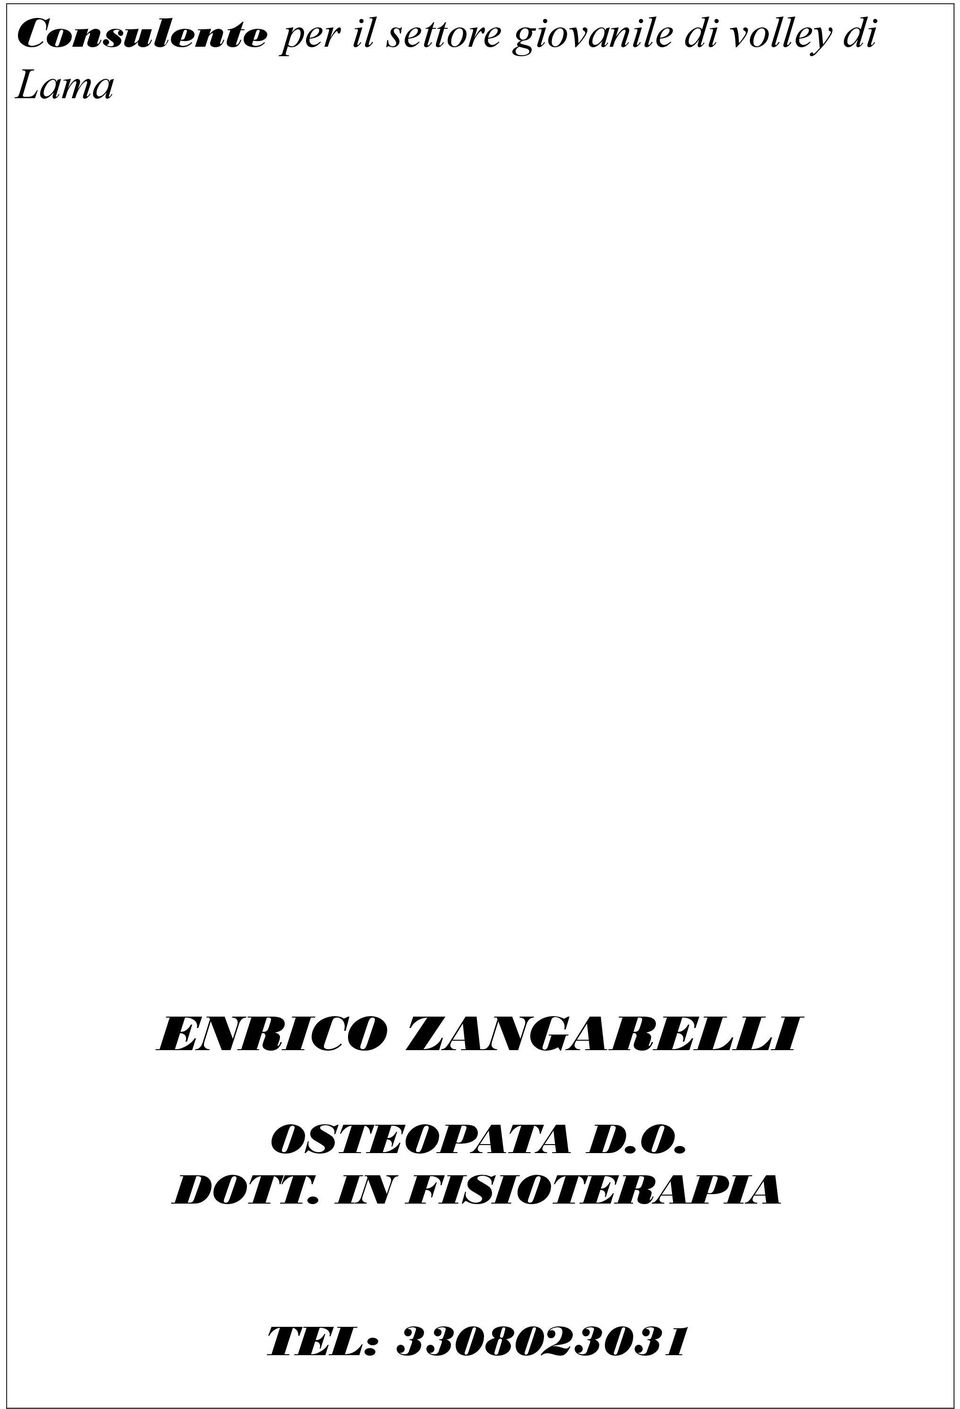 ENRICO ZANGARELLI OSTEOPATA D.